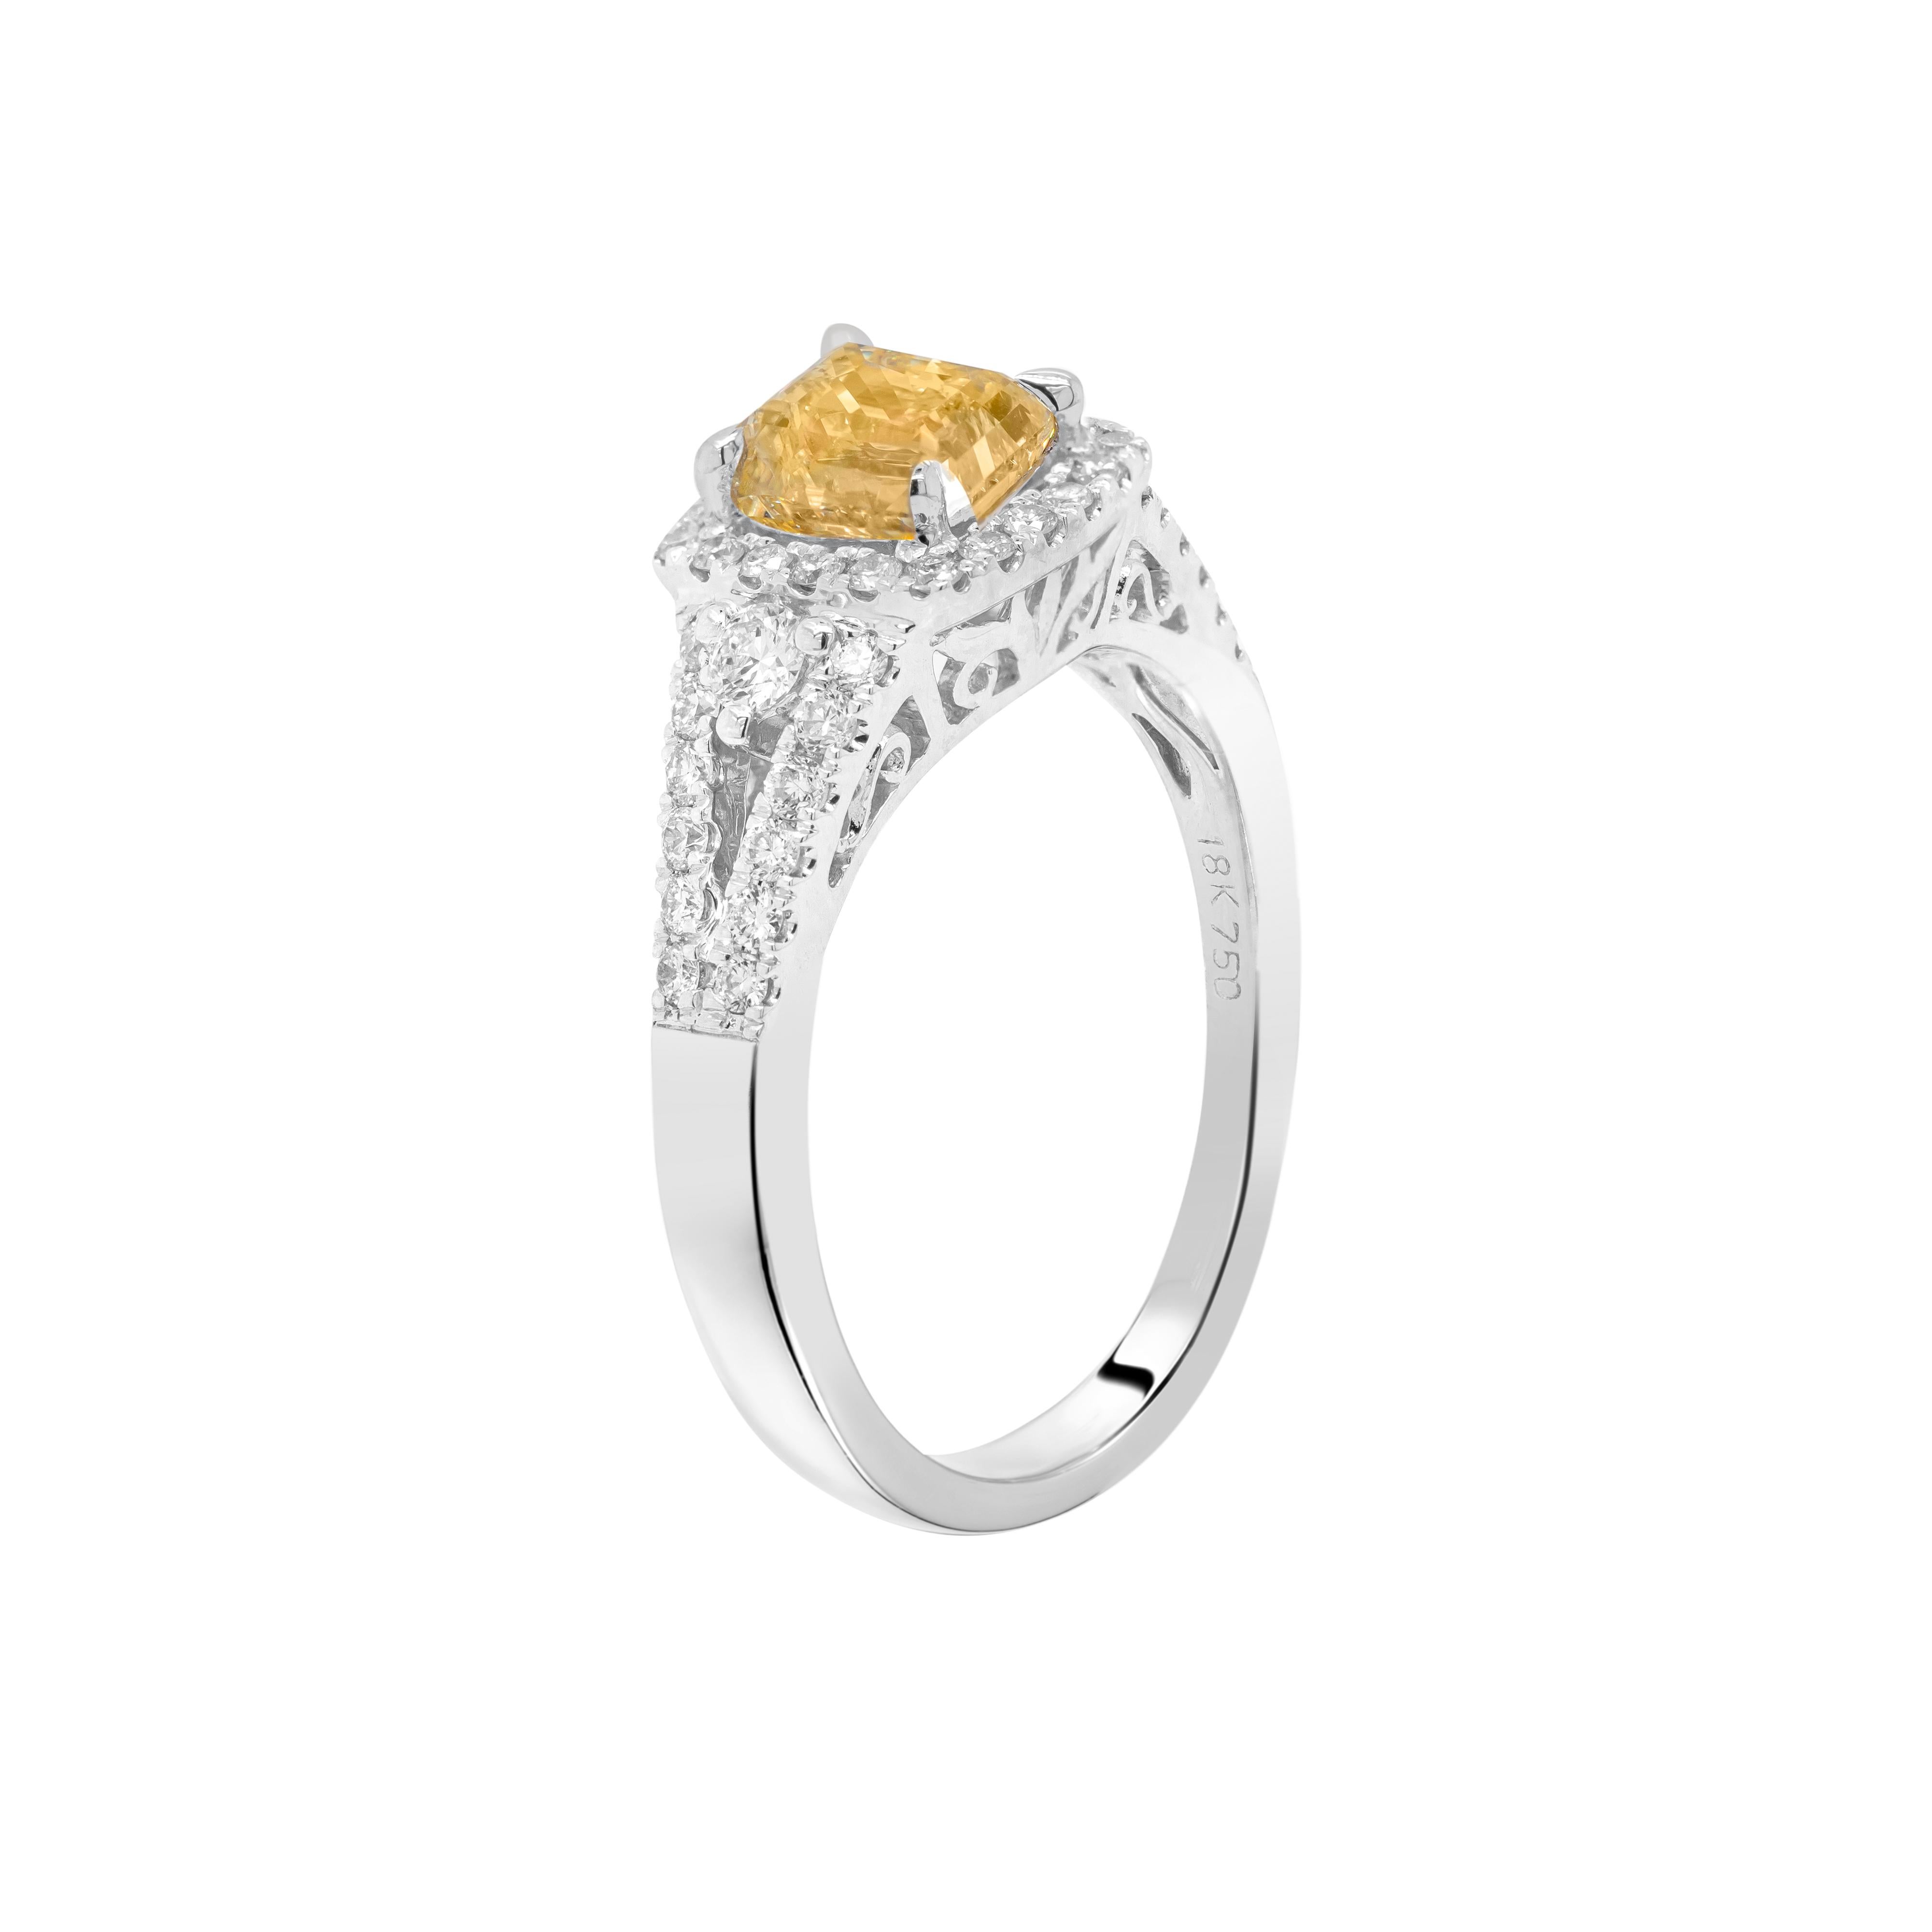 Dieser wunderbare Verlobungsring aus 18 Karat Weißgold enthält einen wunderschönen gelben Diamanten im Smaragdschliff mit einem Gewicht von 1,02ct, der in einer offenen Fassung mit vier Krallen gefasst ist. Der exquisite Stein ist von einem Halo aus